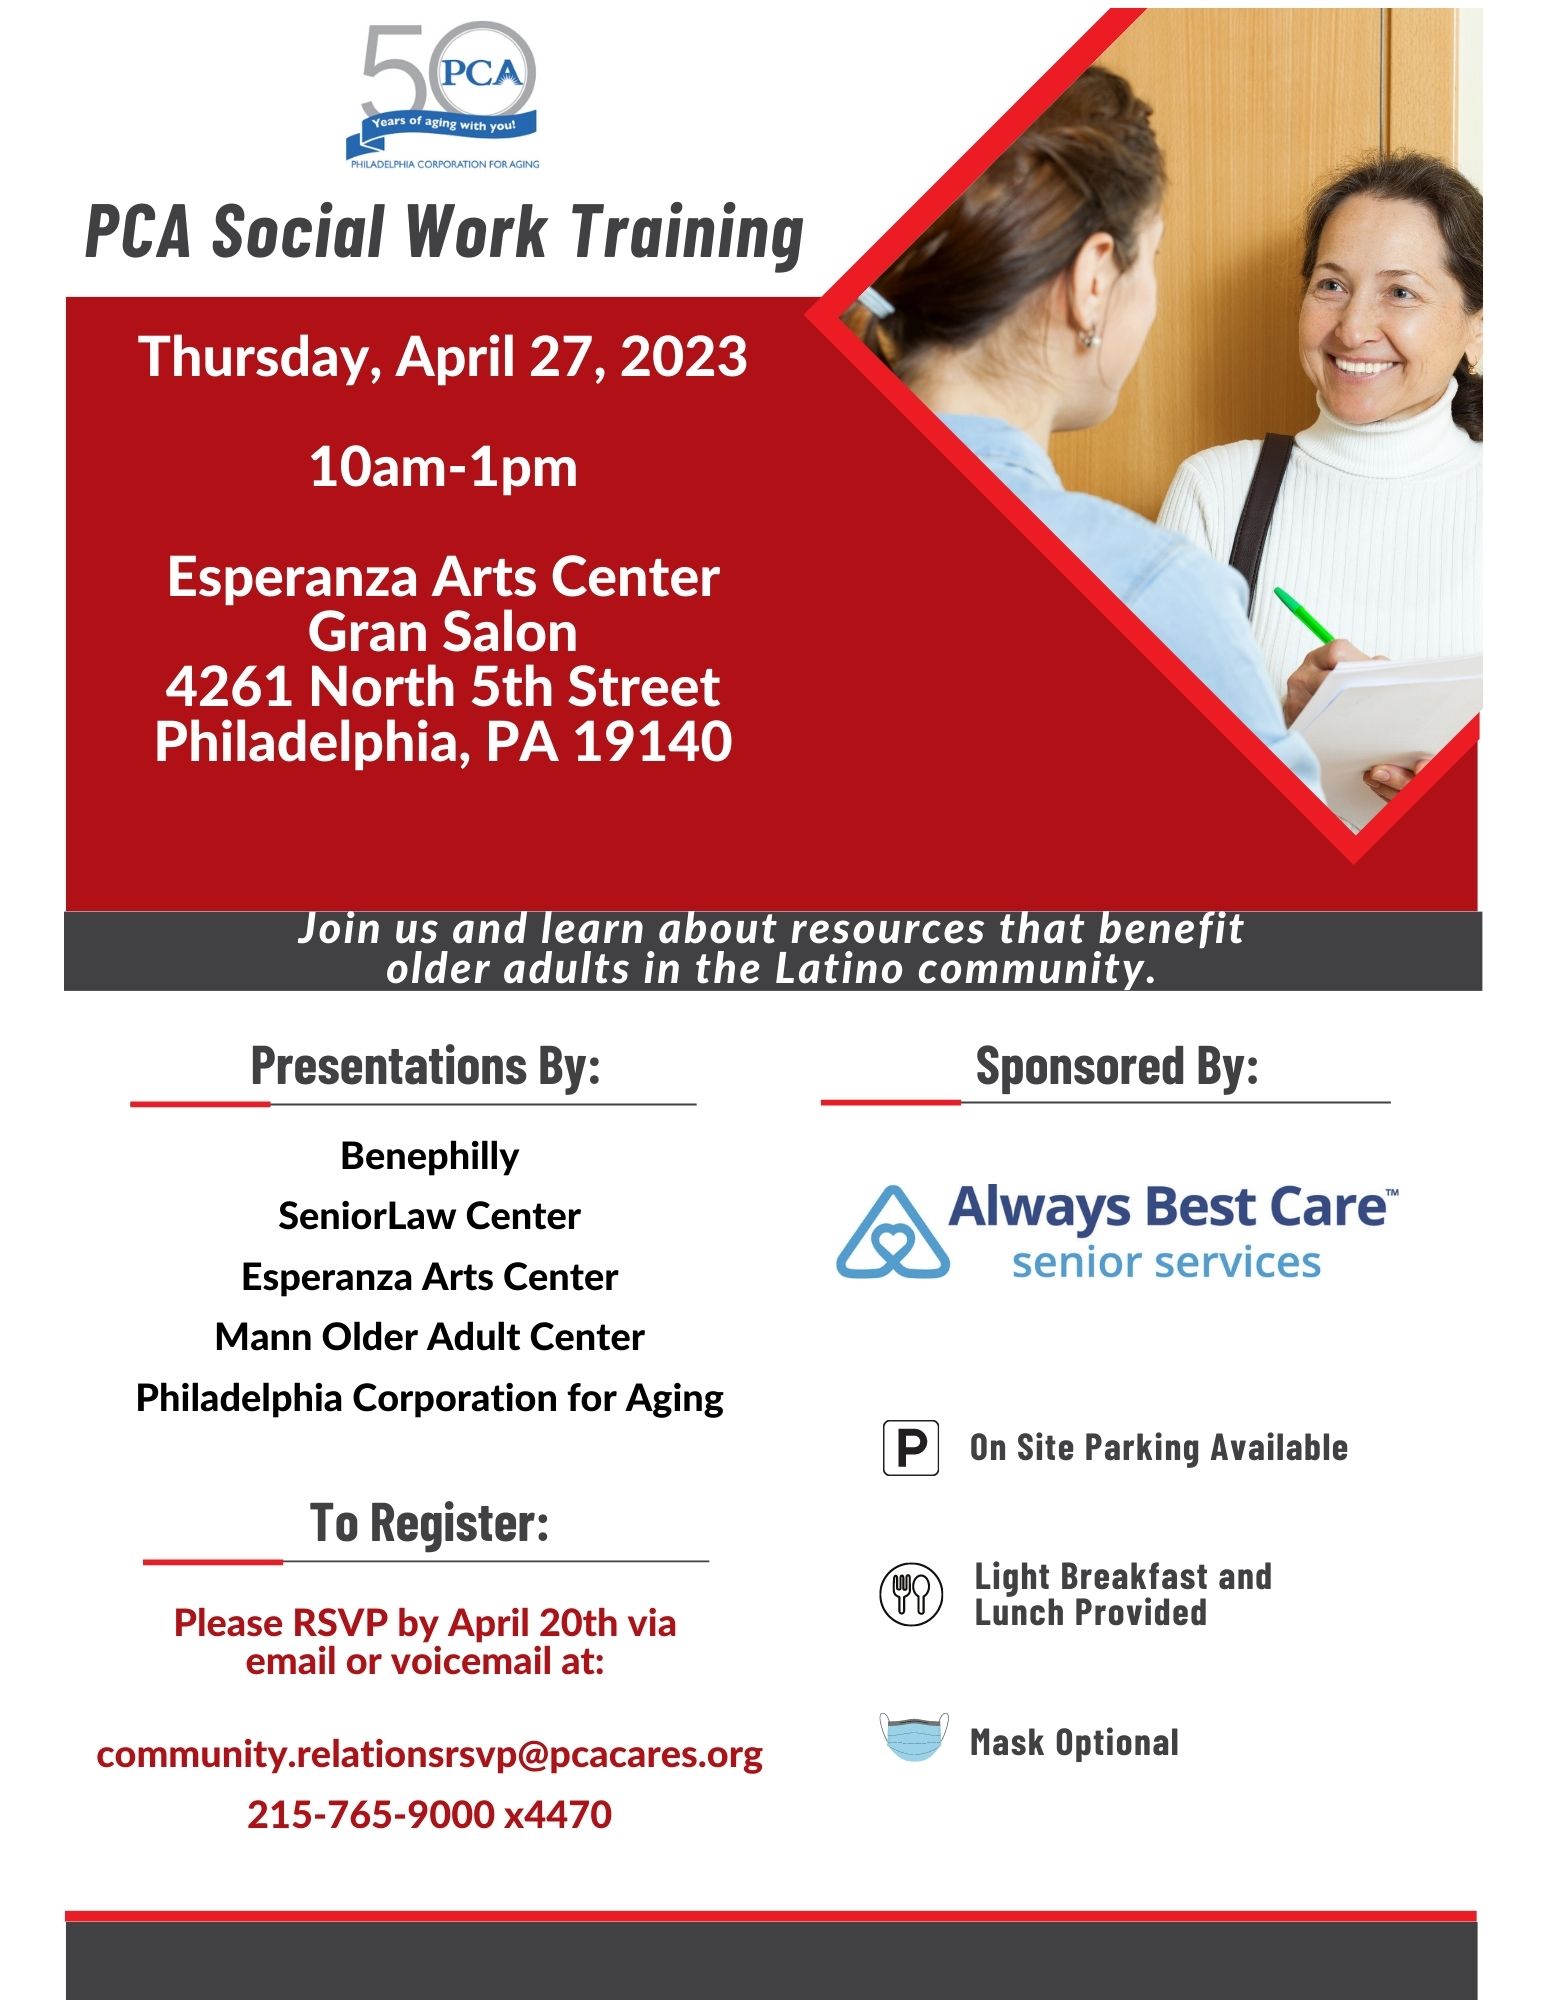 PCA Social Work Training Philadelphia Corporation For Aging